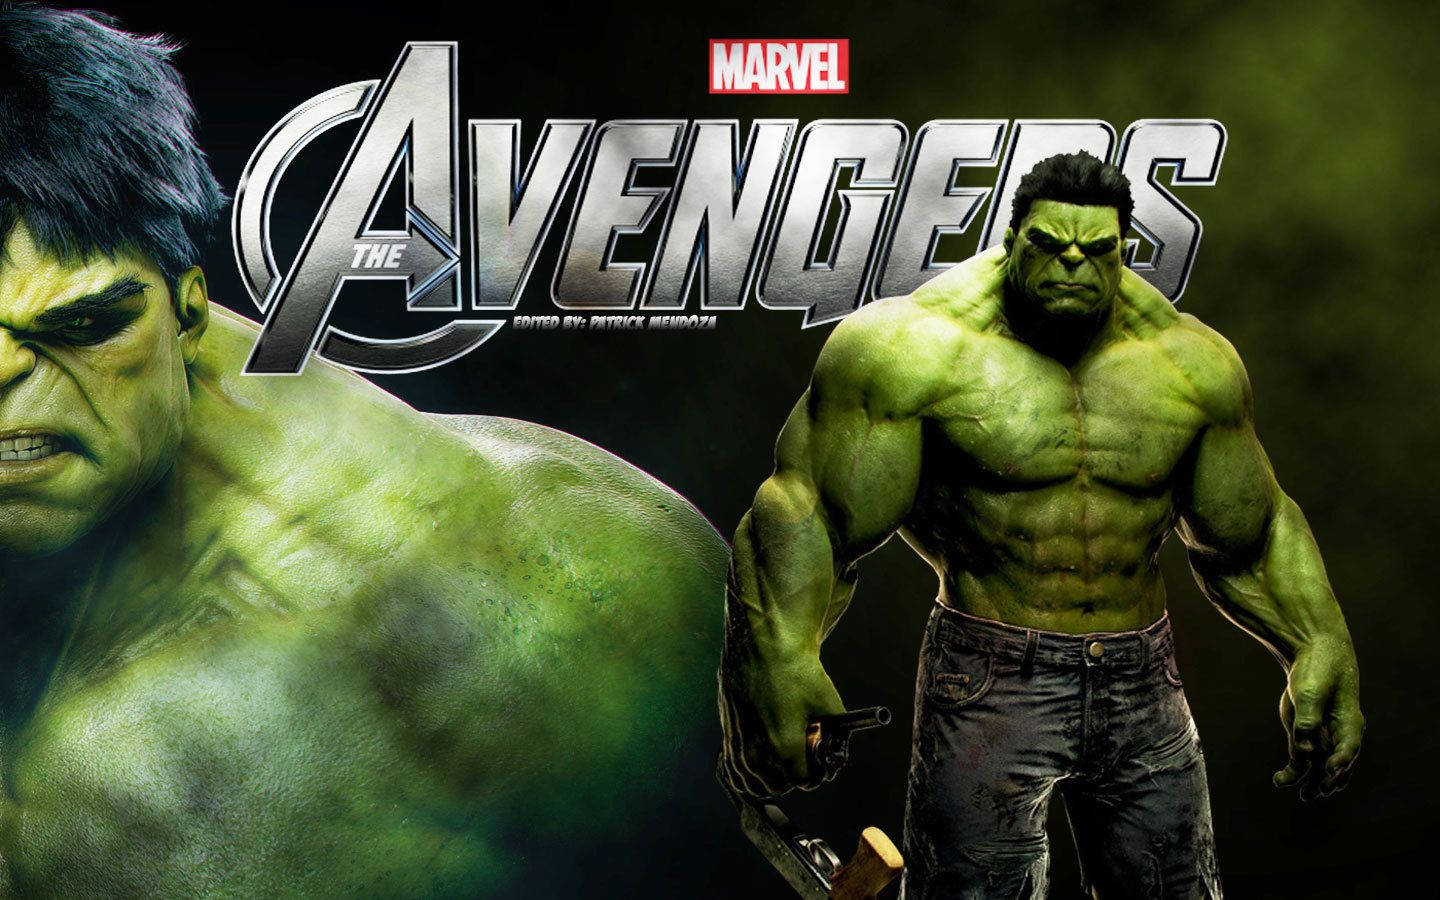 Marvel The Hulk Avengers Wallpaper